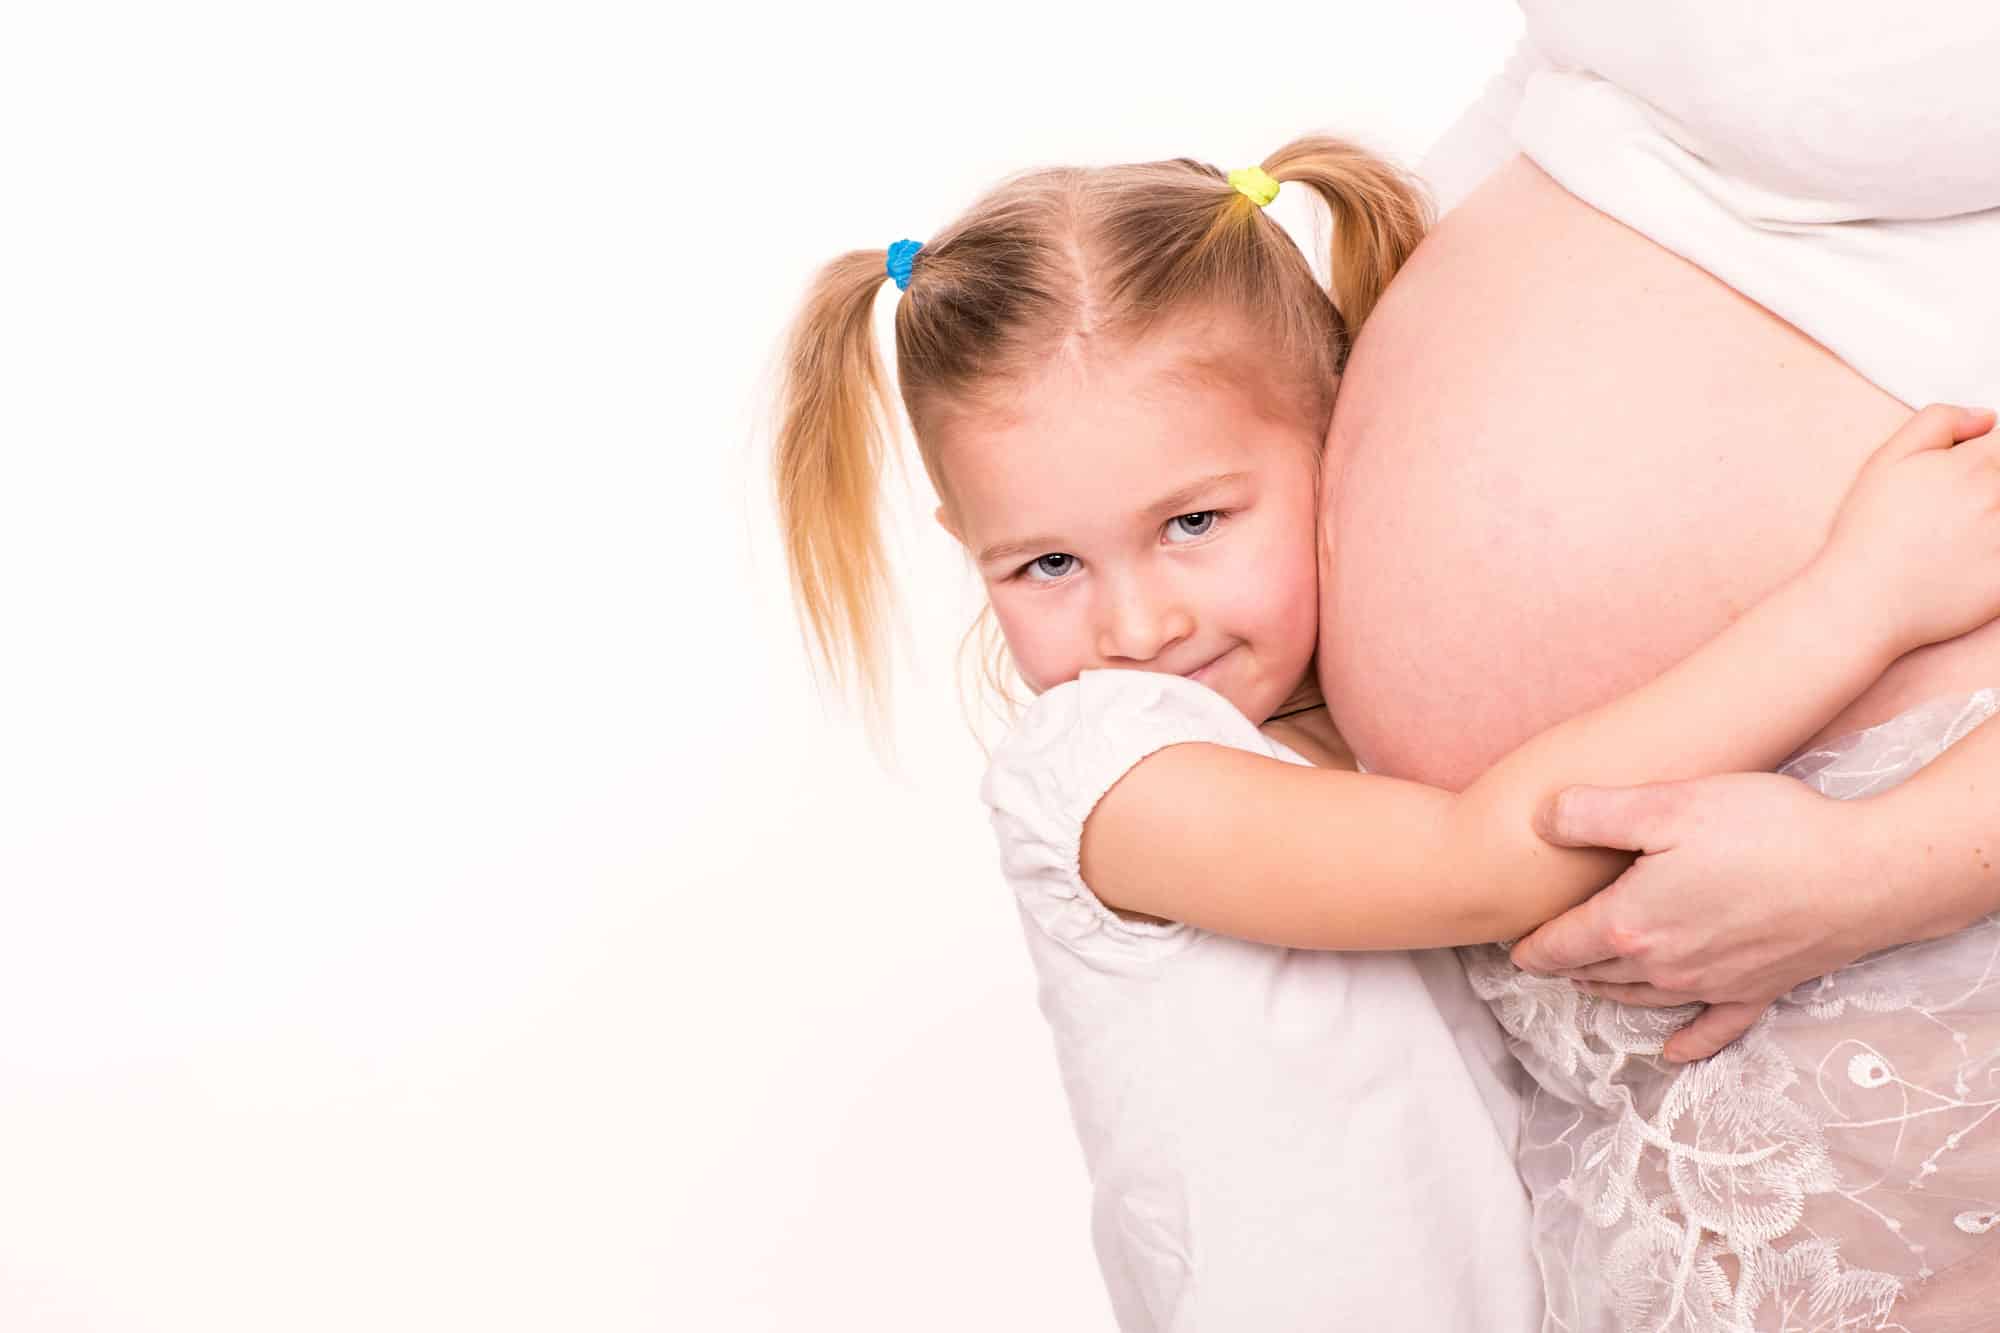 La exposición al alcohol durante el embarazo puede afectar a varias generaciones